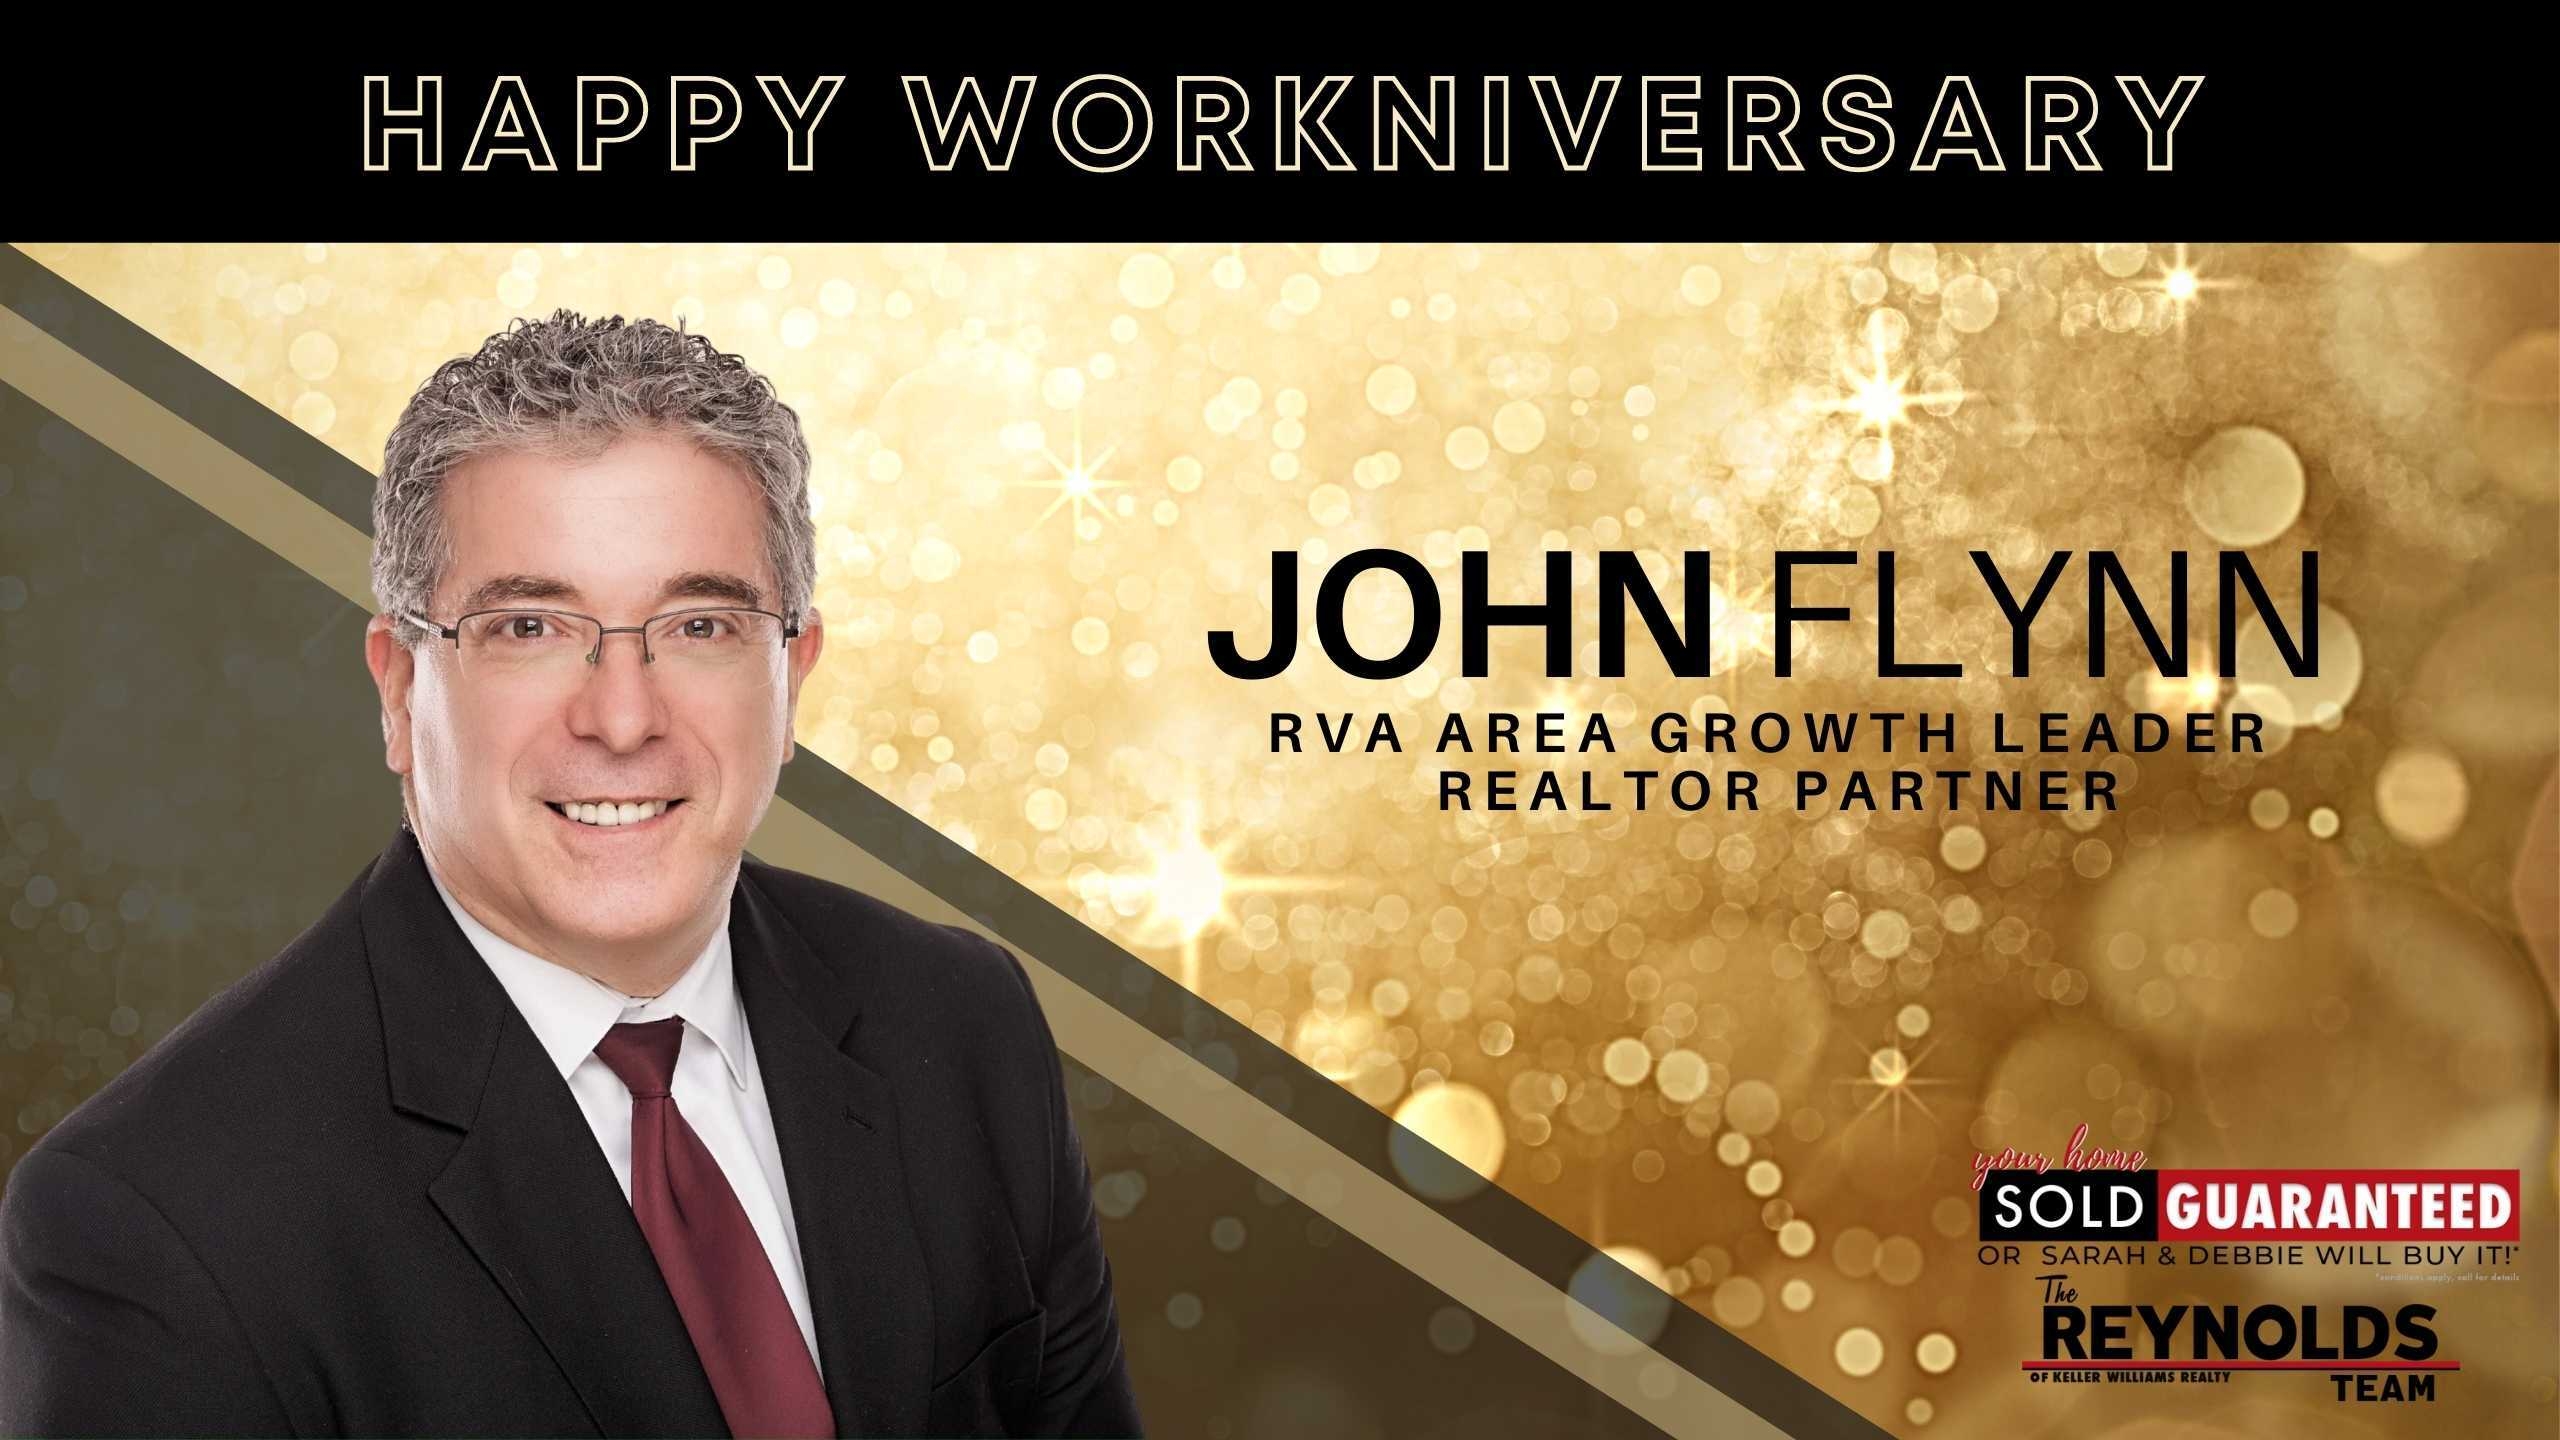 Happy Workniversary, John!